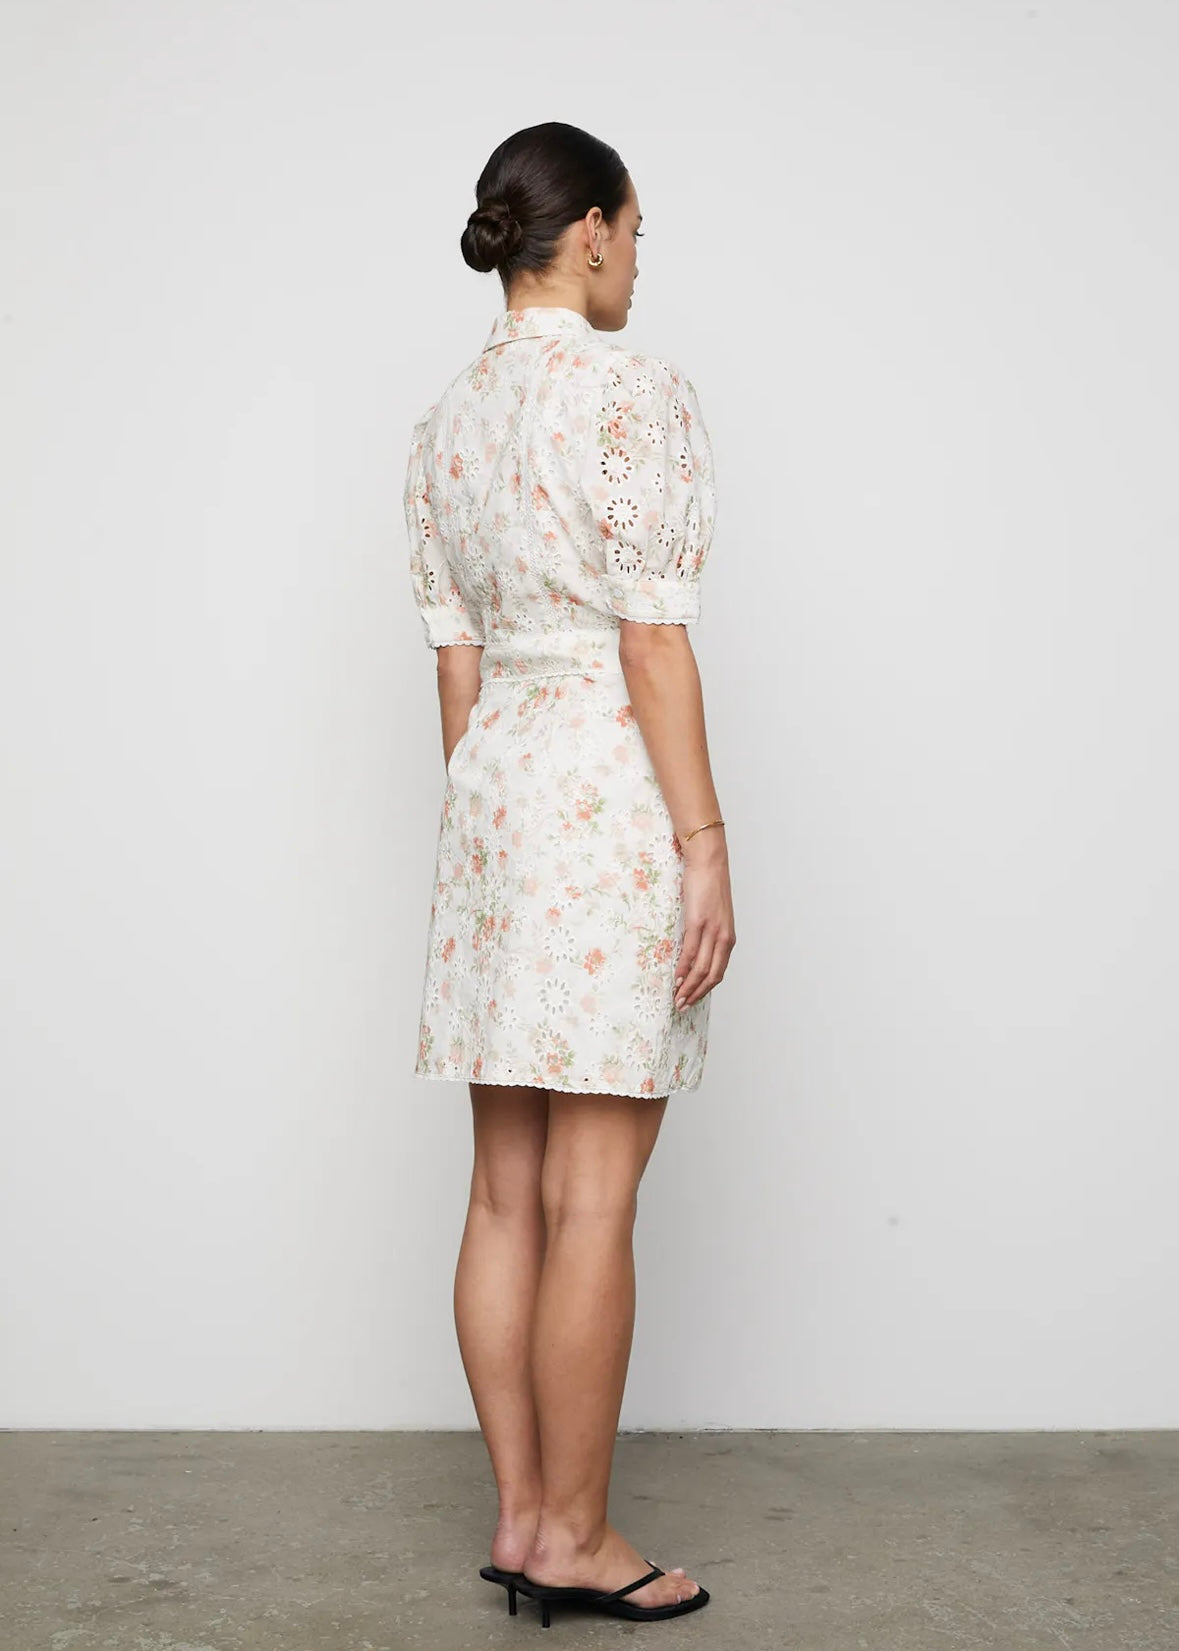 Camilla Pihl Juno dress - White Rose Print